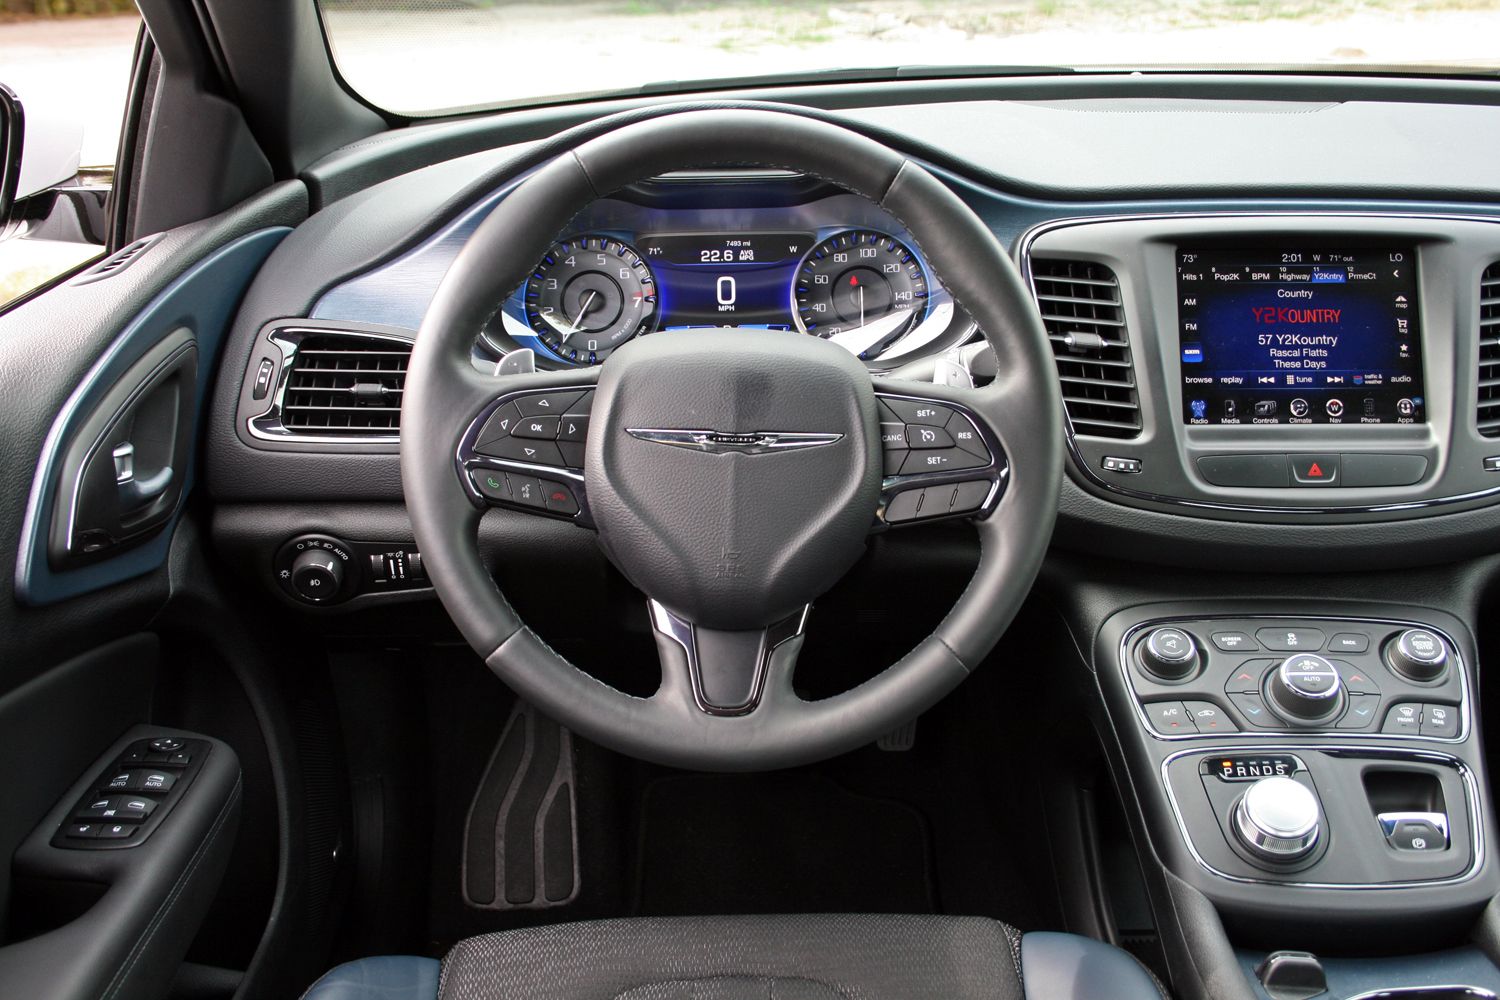 2015 Chrysler 200 S - Driven